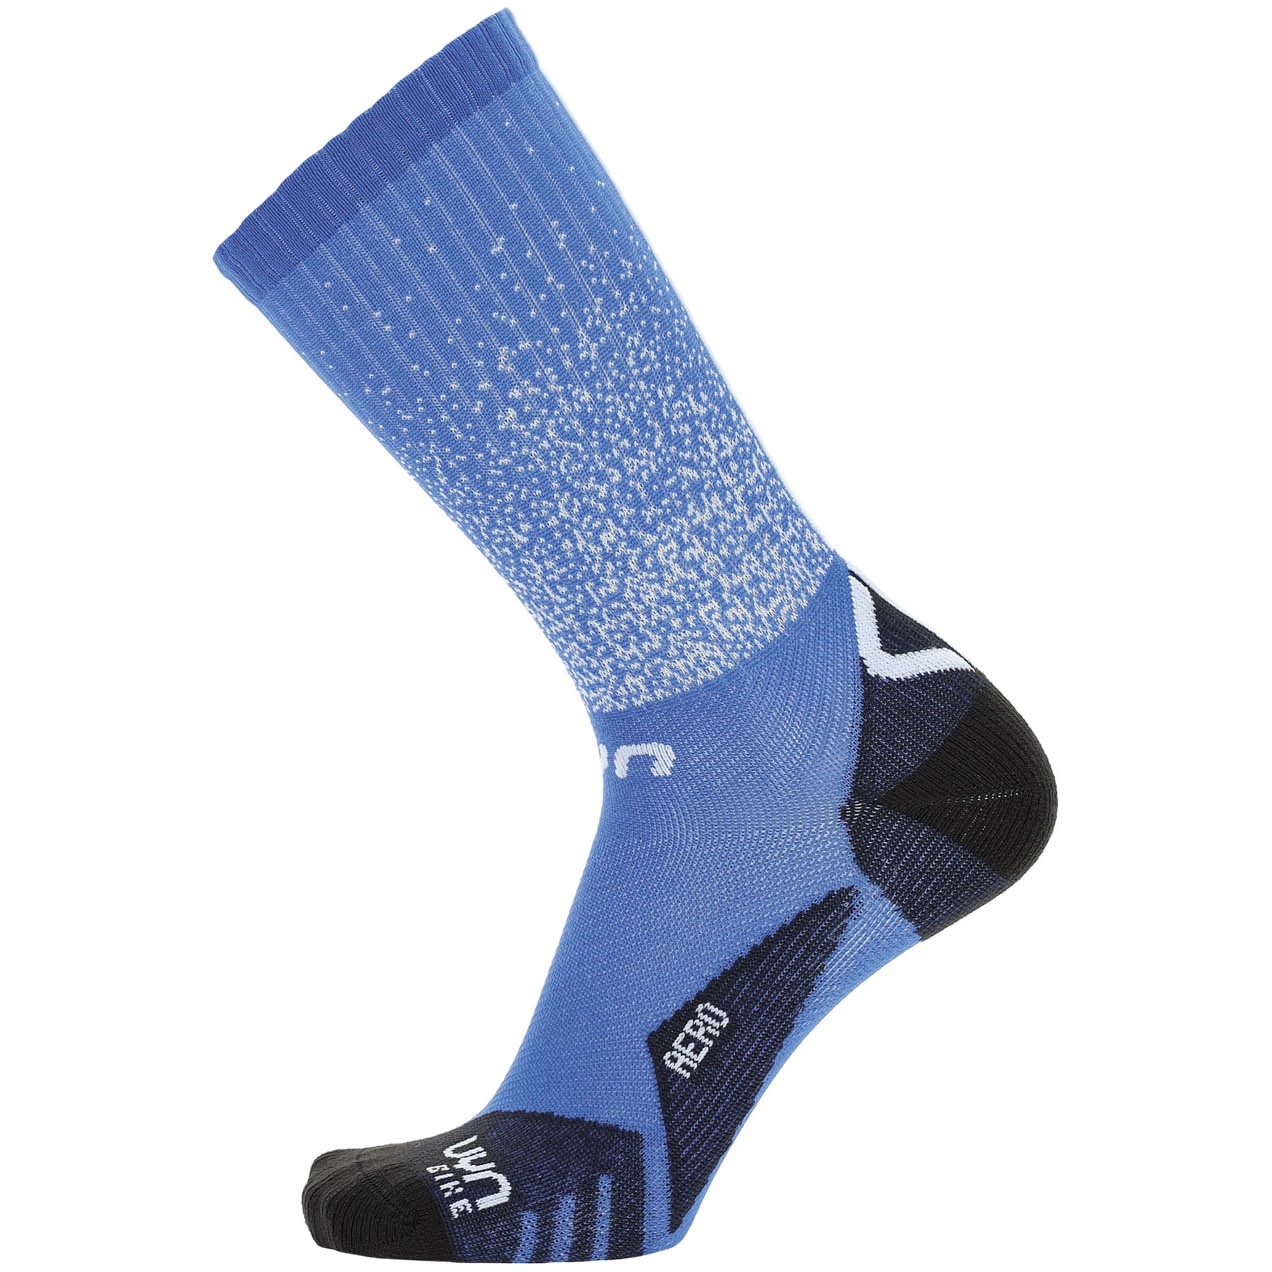 Productfoto van UYN Cycling Aero Sokken Heren - Blauw/Zwart